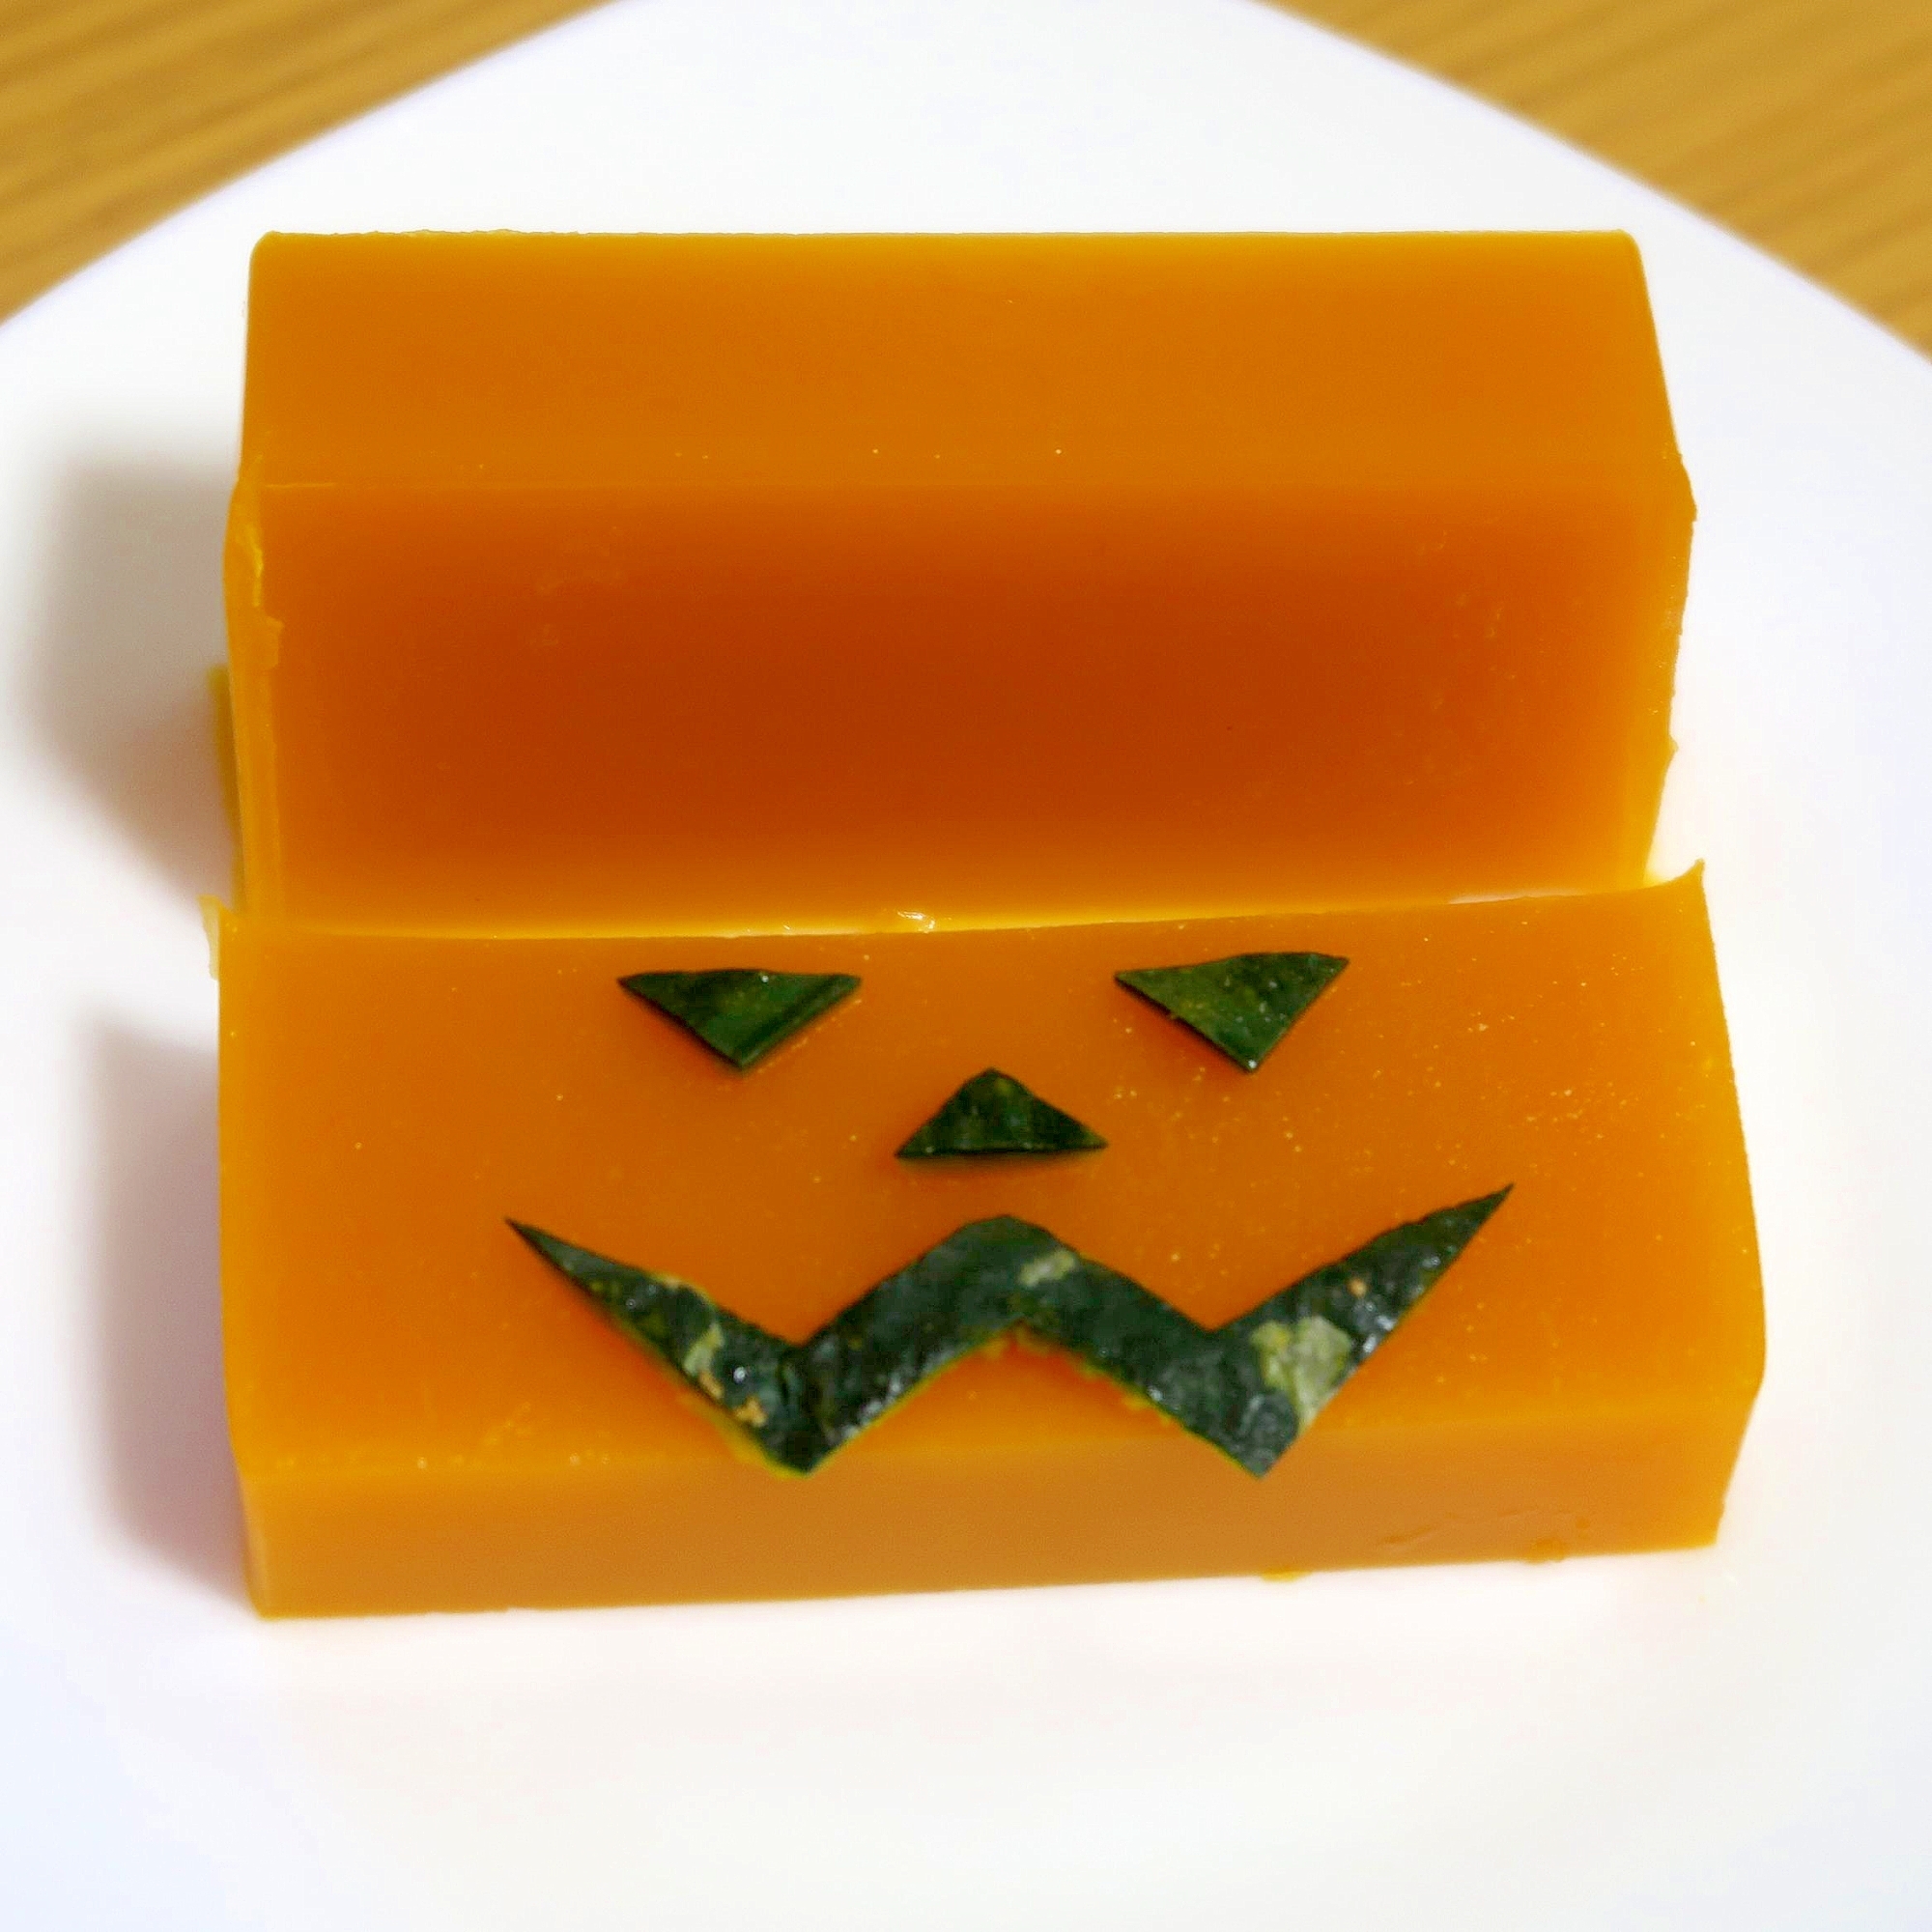 かぼちゃようかん☆ハロウィンに和風のお菓子